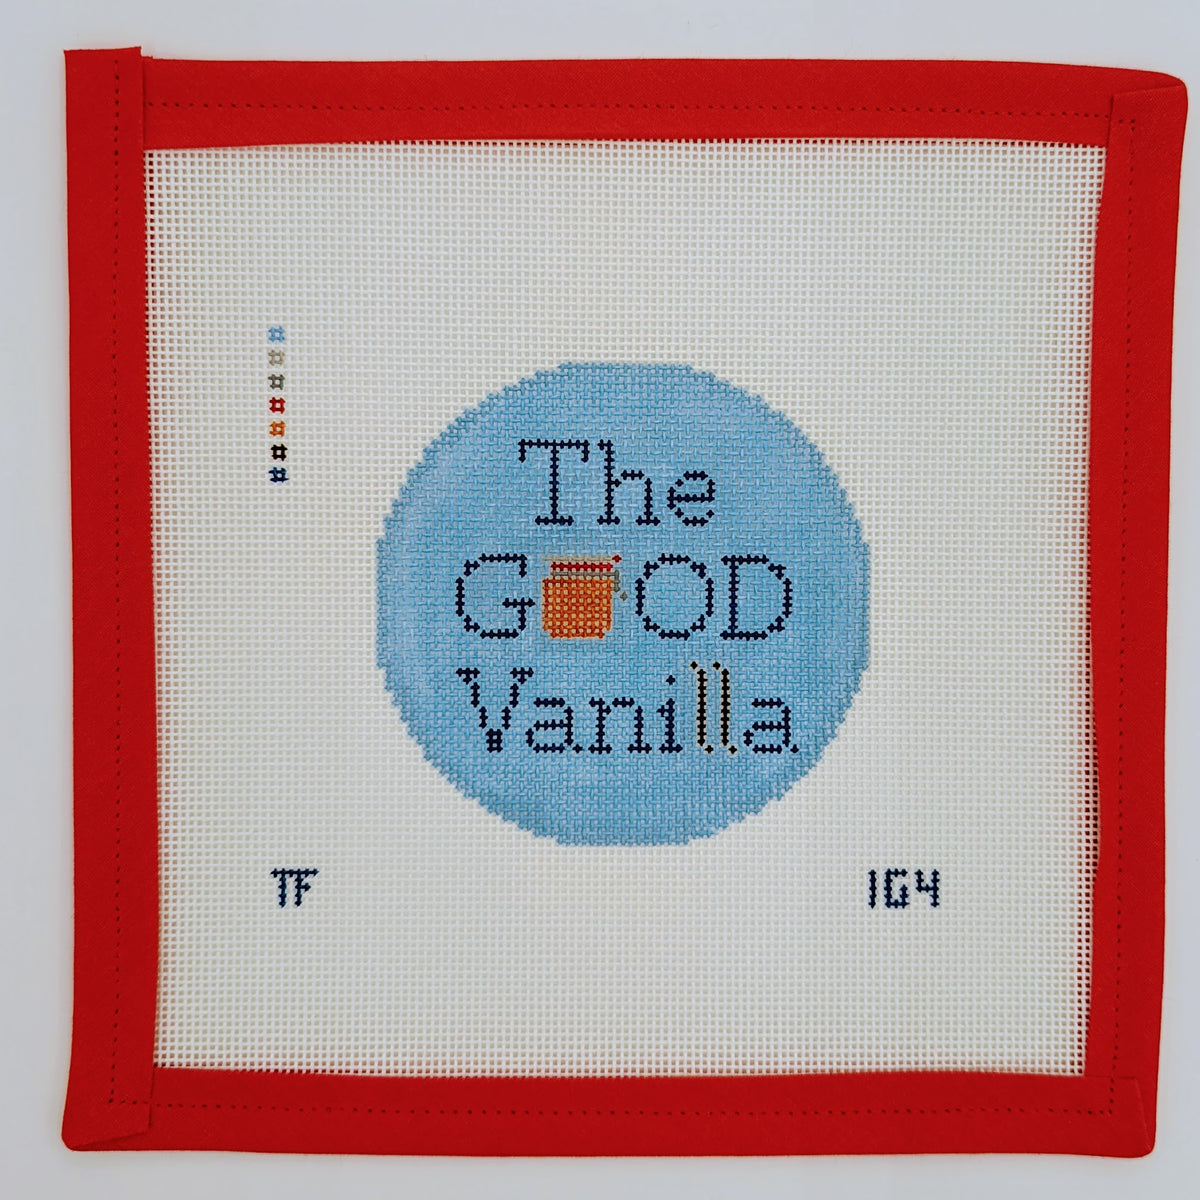 Ina Garten - Good Vanilla